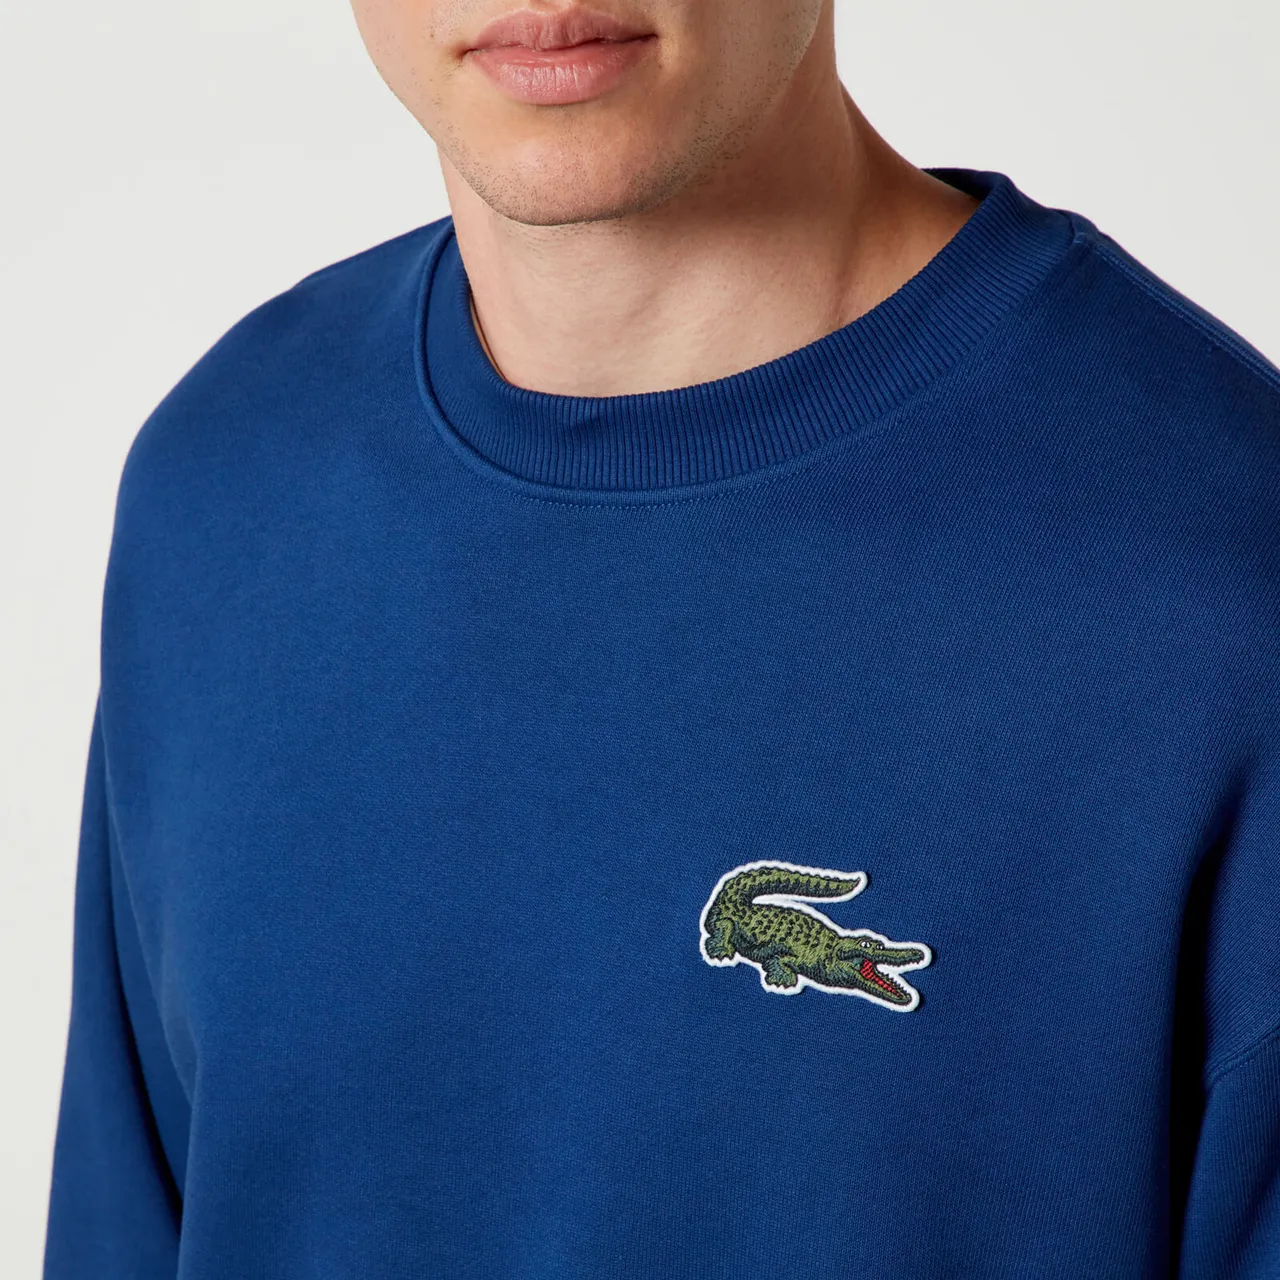 Lacoste DO Croc 80's Cotton Sweatshirt